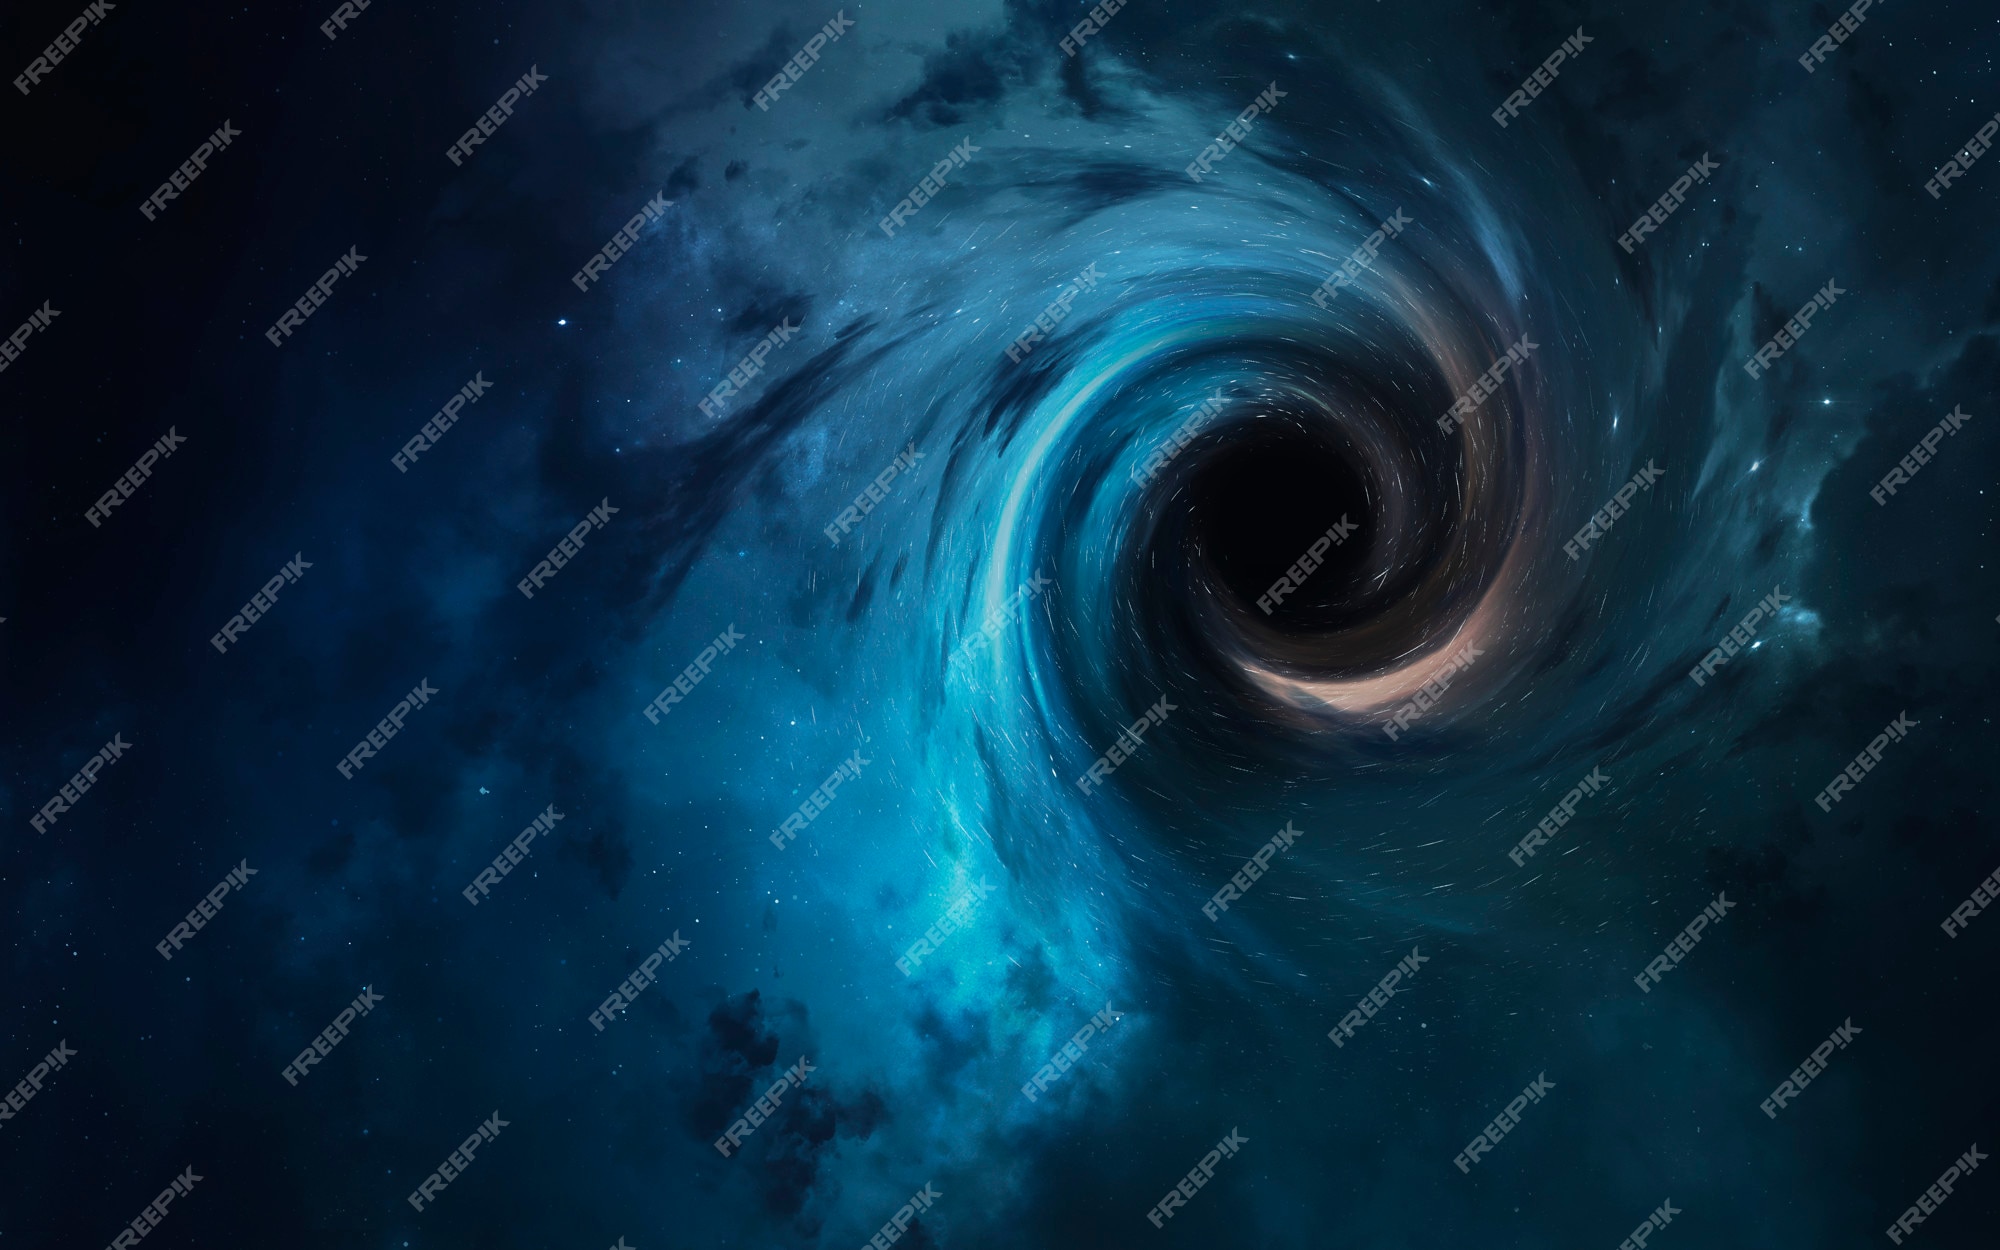 ブラックホール 抽象的な空間の壁紙 星 星雲 銀河 惑星で満たされた宇宙 プレミアム写真